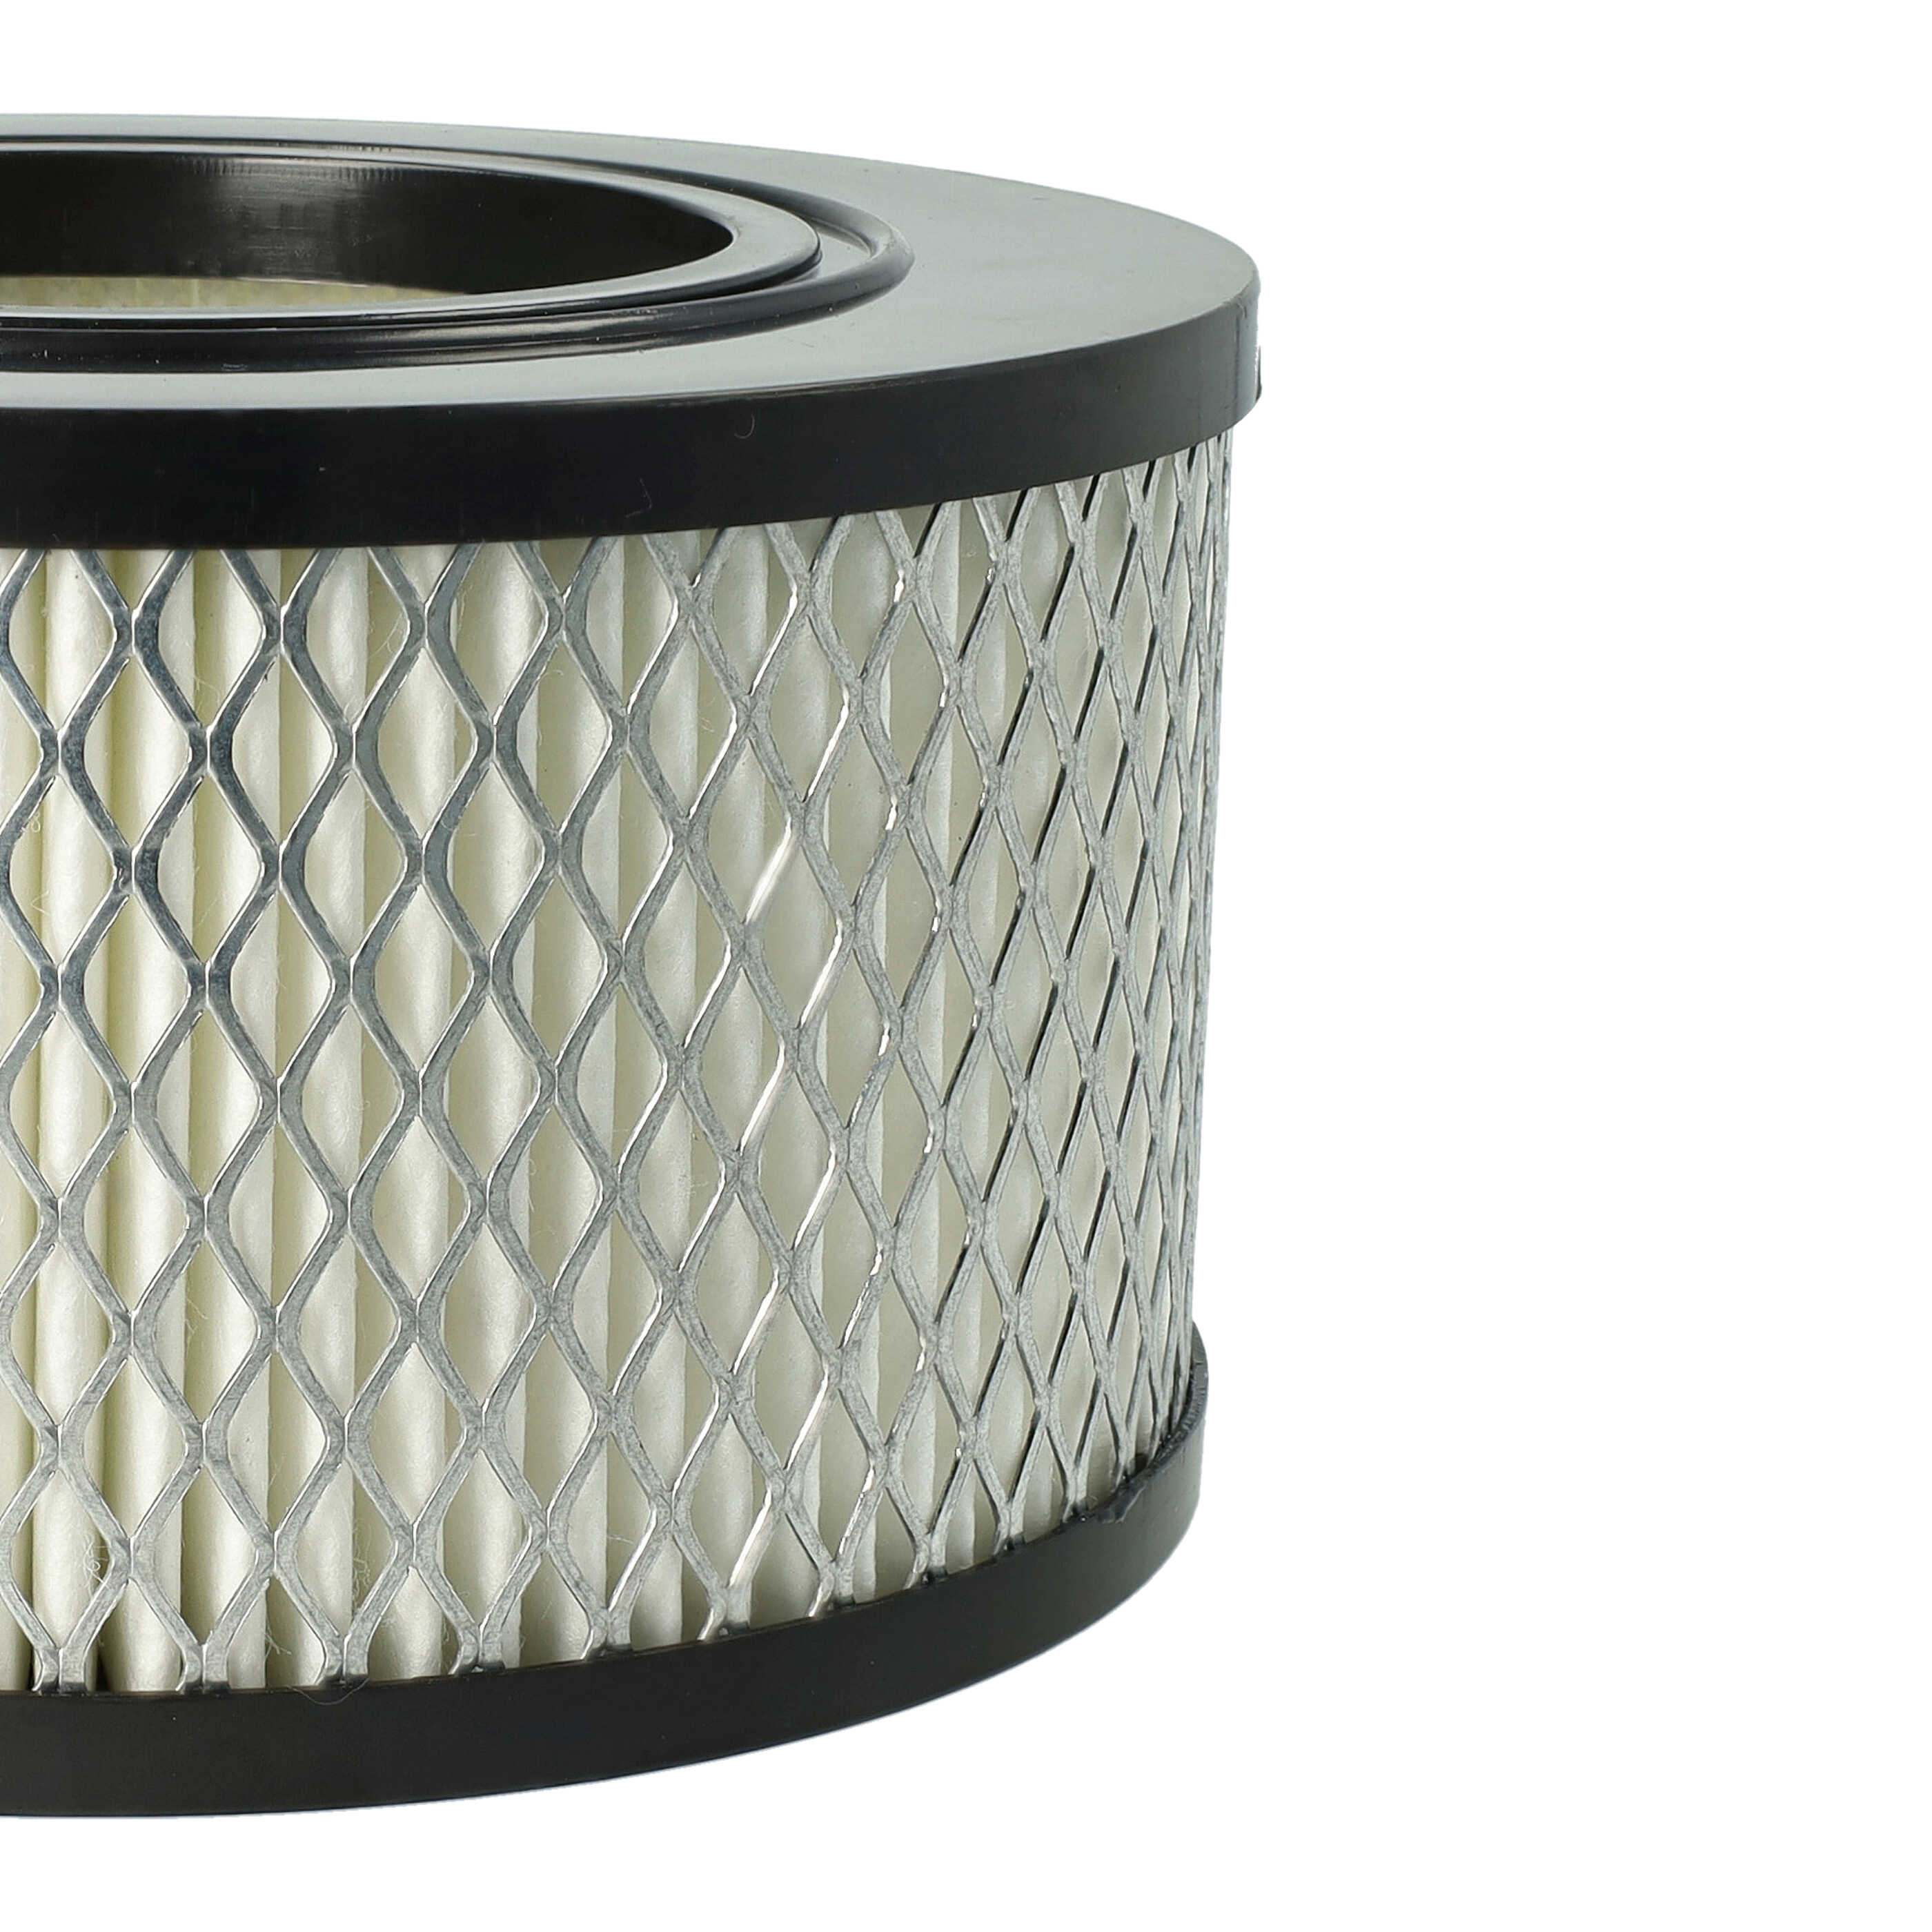 Filtro reemplaza Flex 445.126 para aspiradora - filtro Hepa negro / blanco